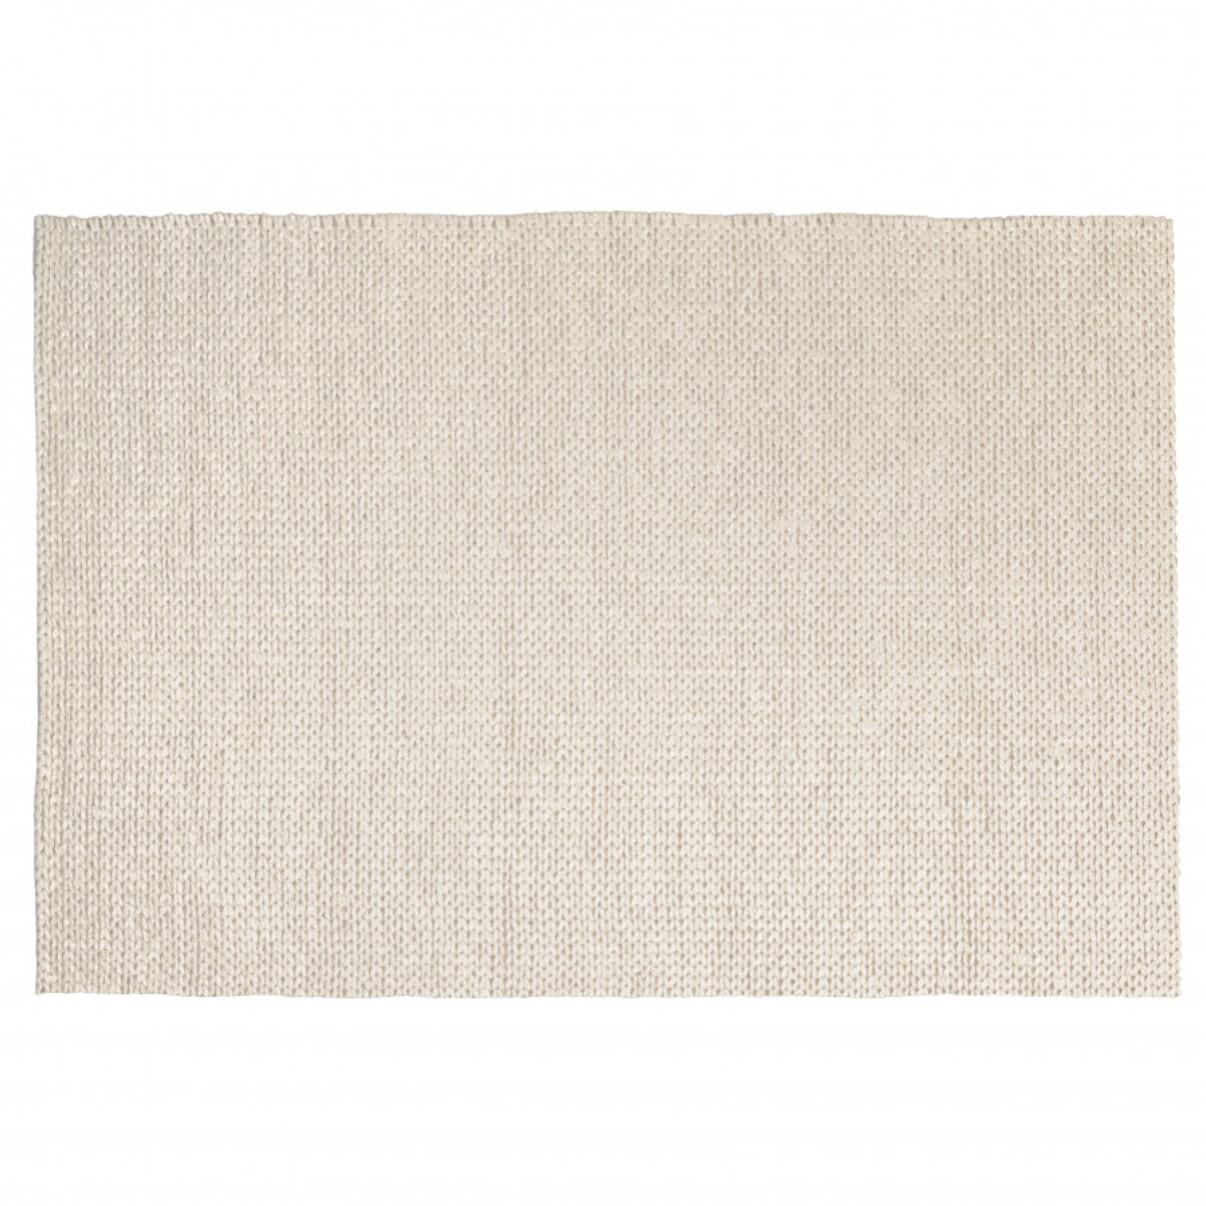 QUENTIN - Tapis rectangulaire 160x230cm en laine tissée couleur écru